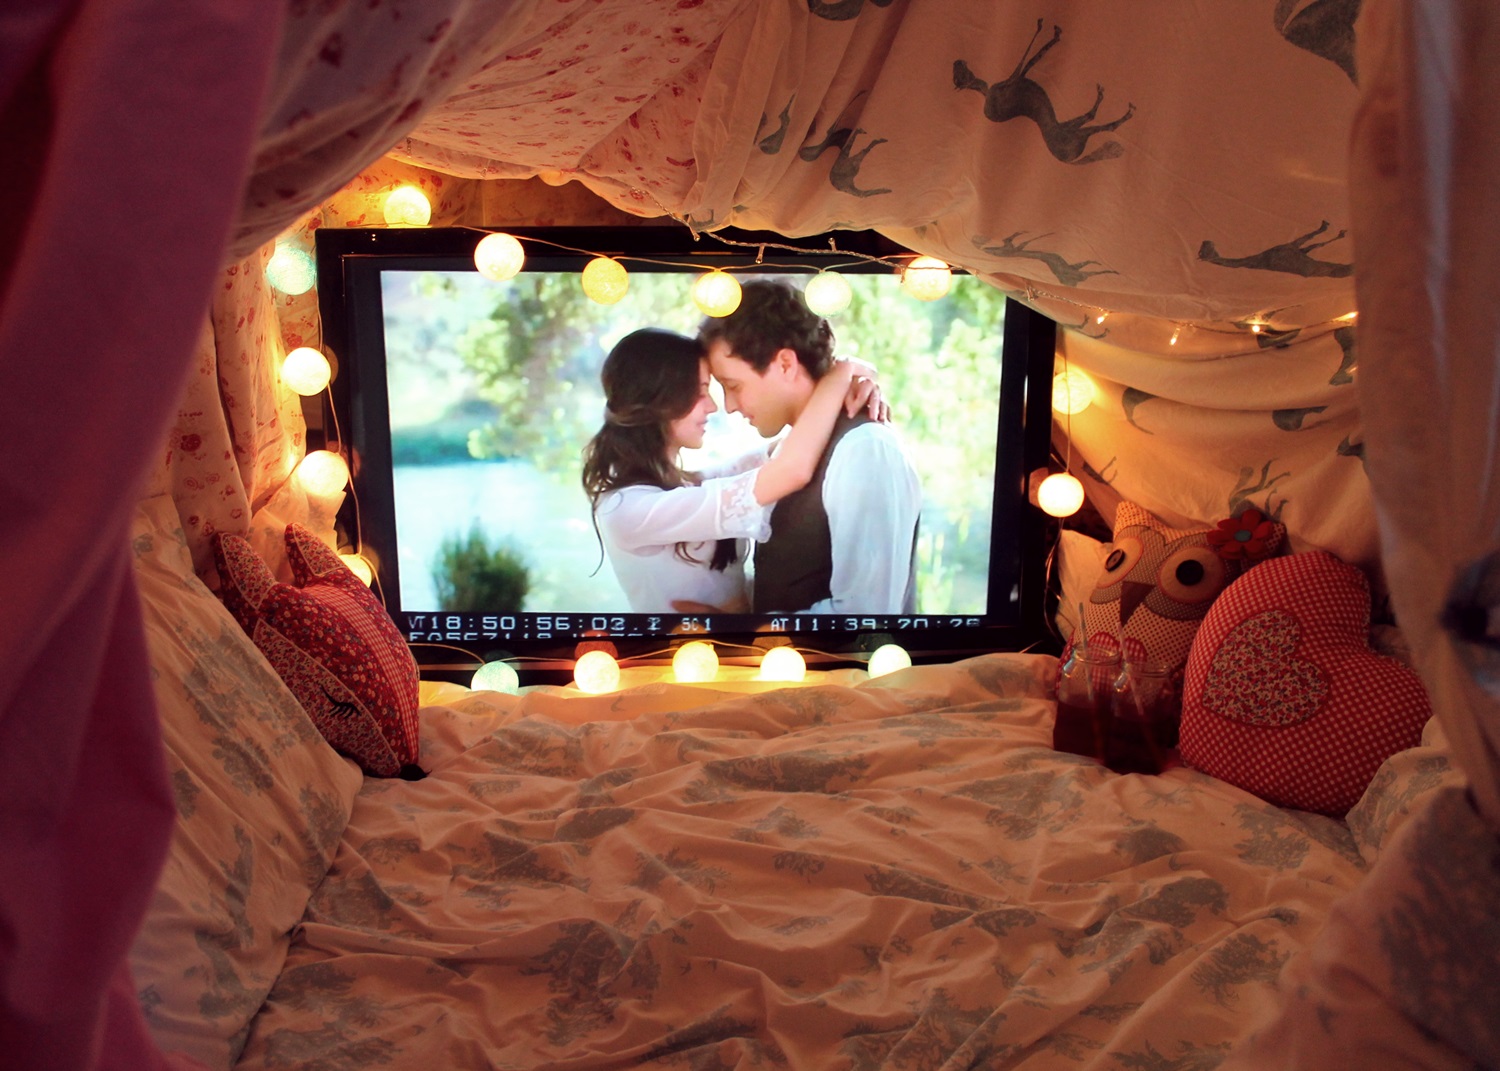 Вместе смотрят телевизор. Романтическая атмосфера в комнате. Романтик в комнате. Спальня для влюбленных. Уютная комната с телевизором.